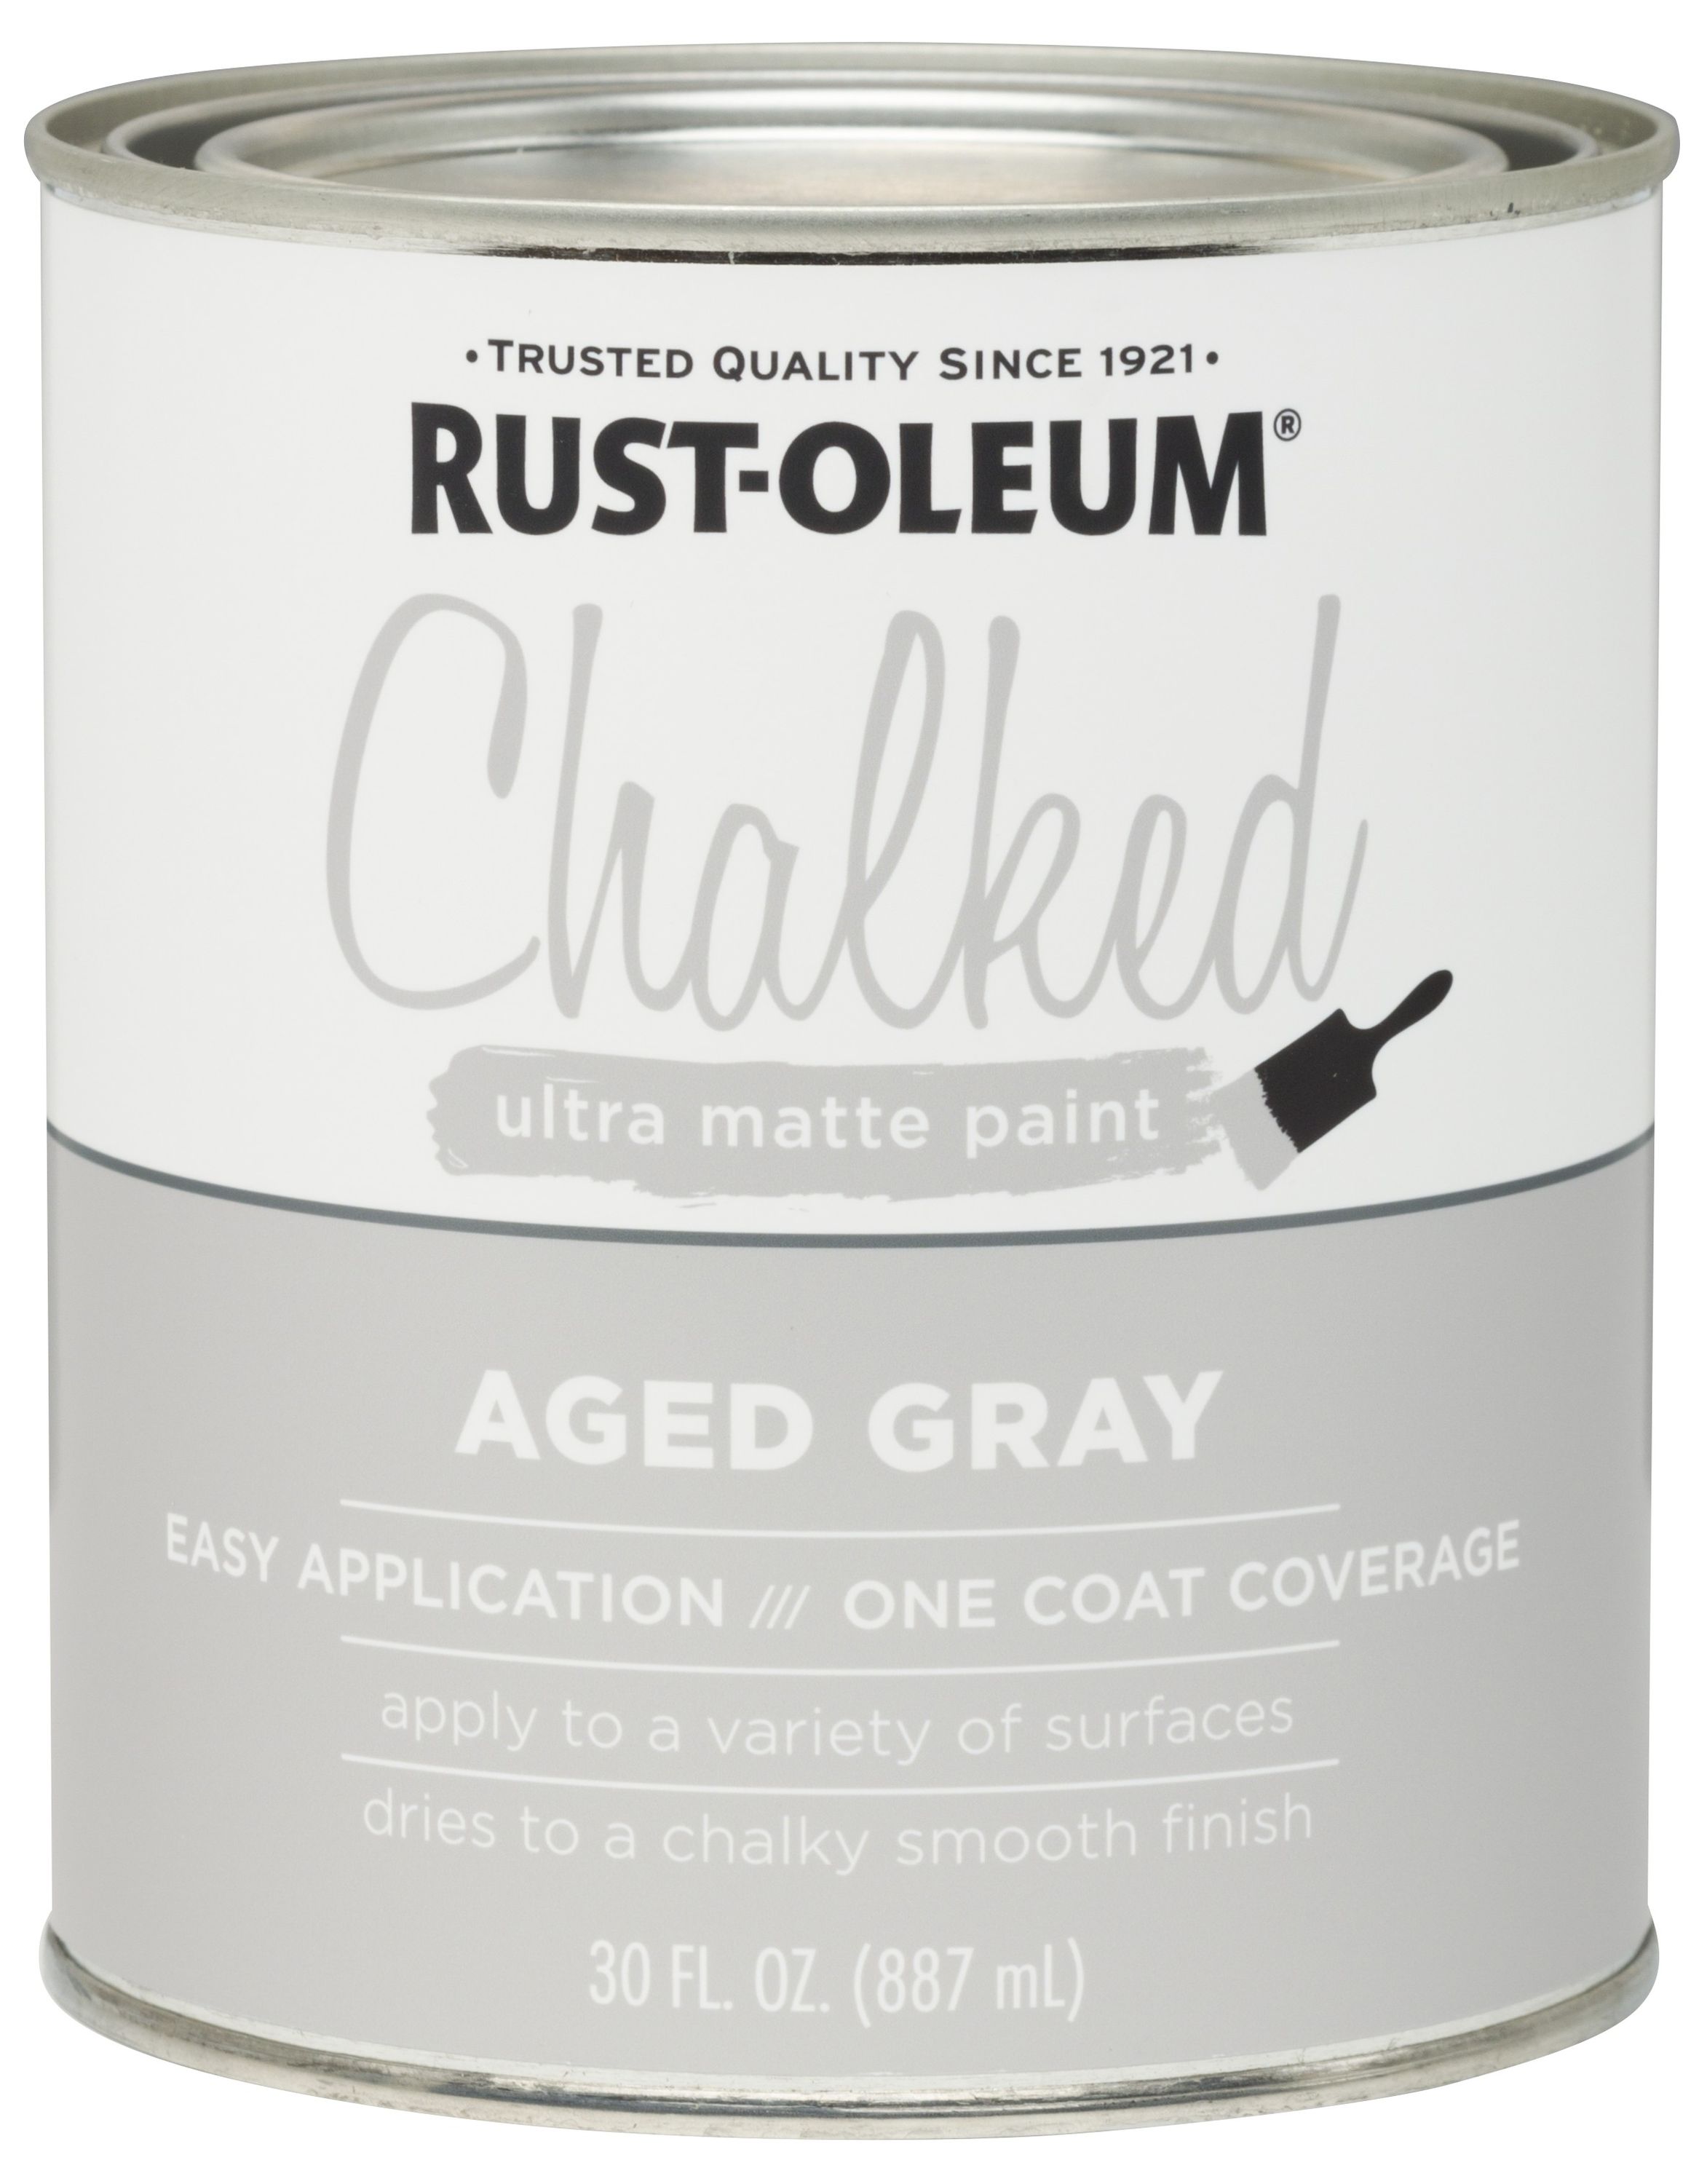 Rust-Oleum Chalked Matte Paint